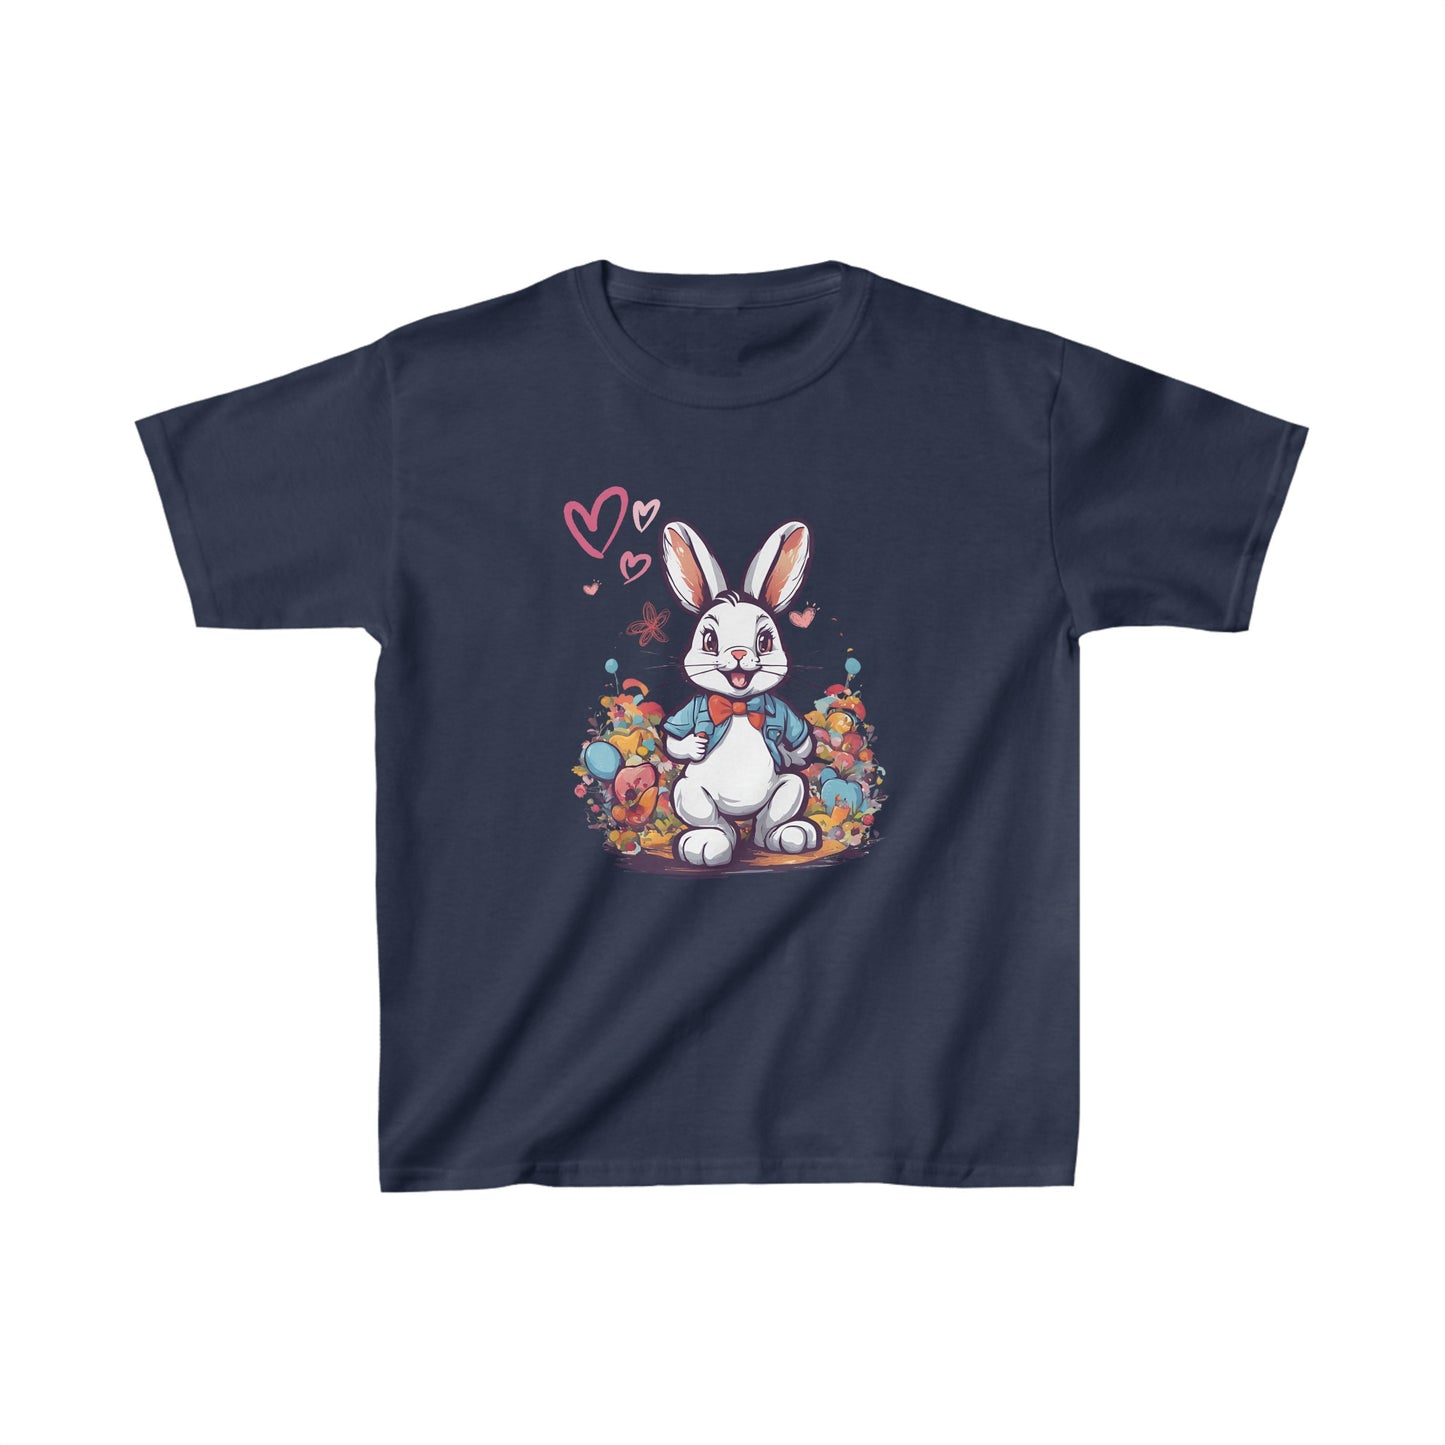 Camiseta manga corta unisex, con conejo estilo Alicia en el país de las maravillas